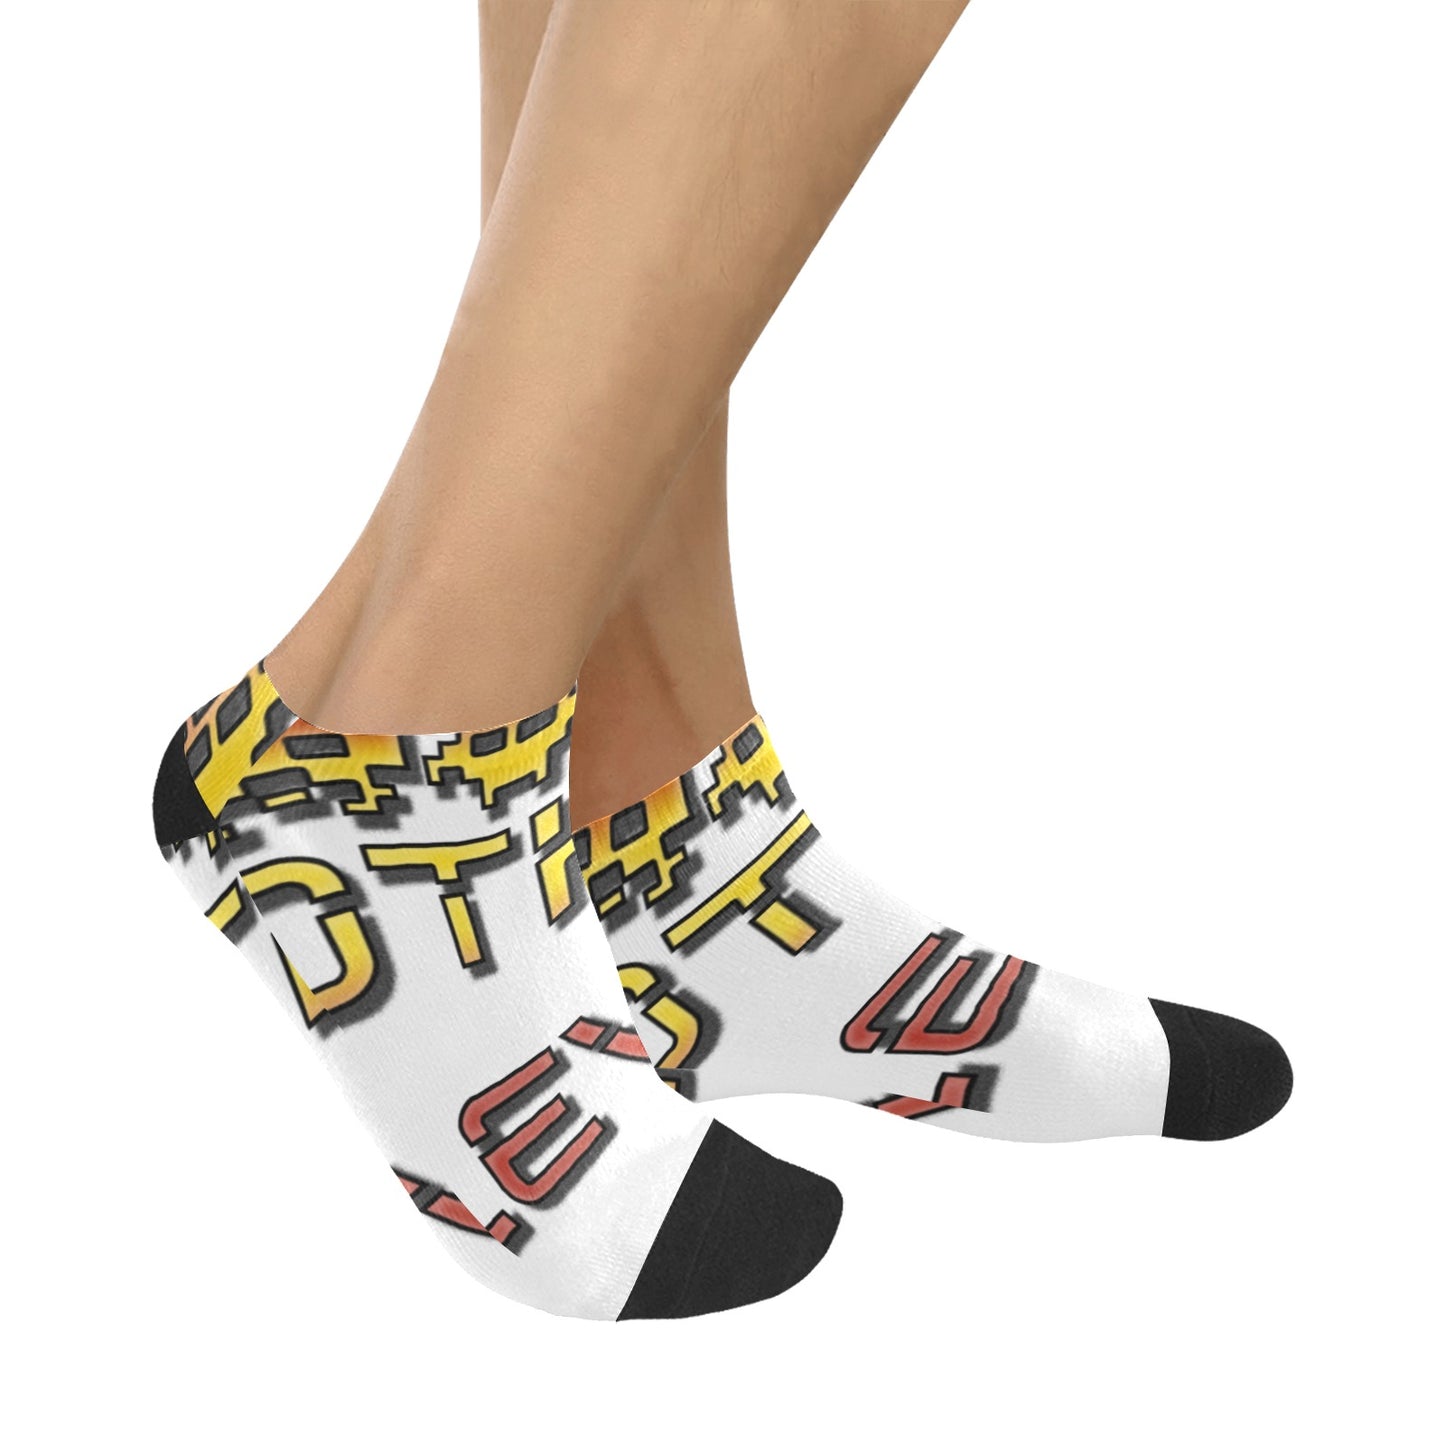 fz men's levels ankle socks one size / fz levels socks - white men's ankle socks